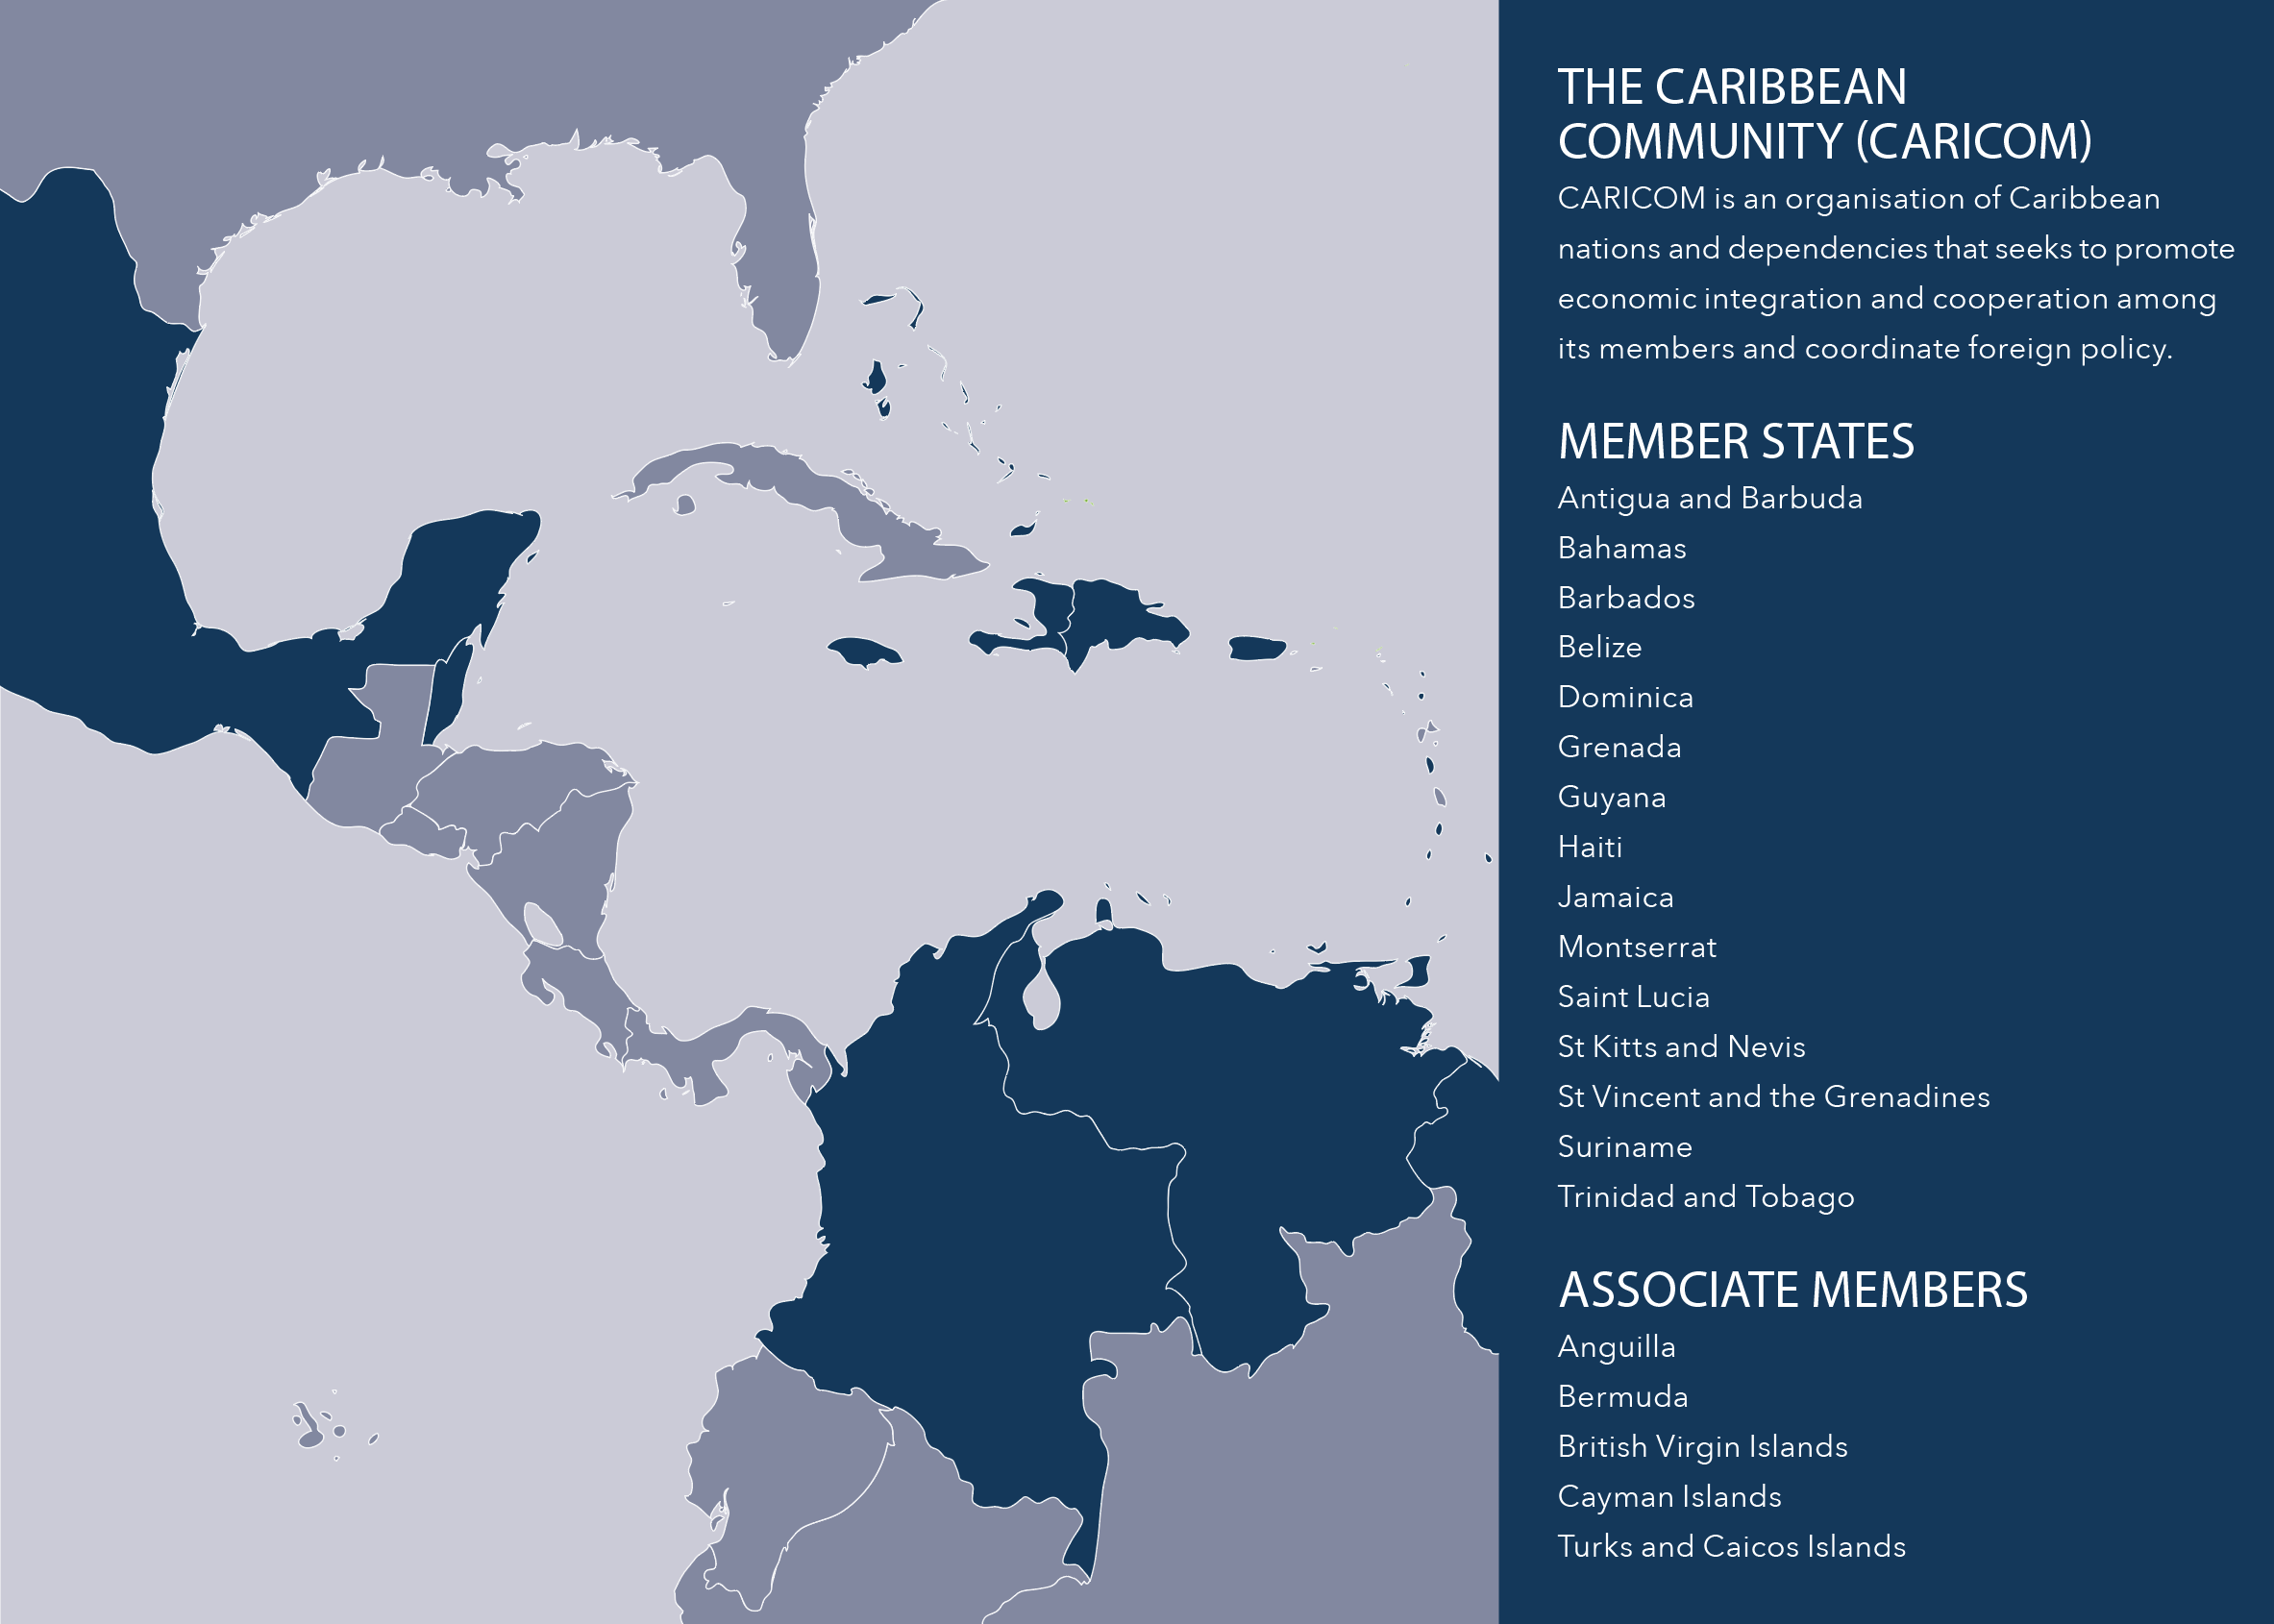 Caribbean Community (CARICOM) membership at May 2019